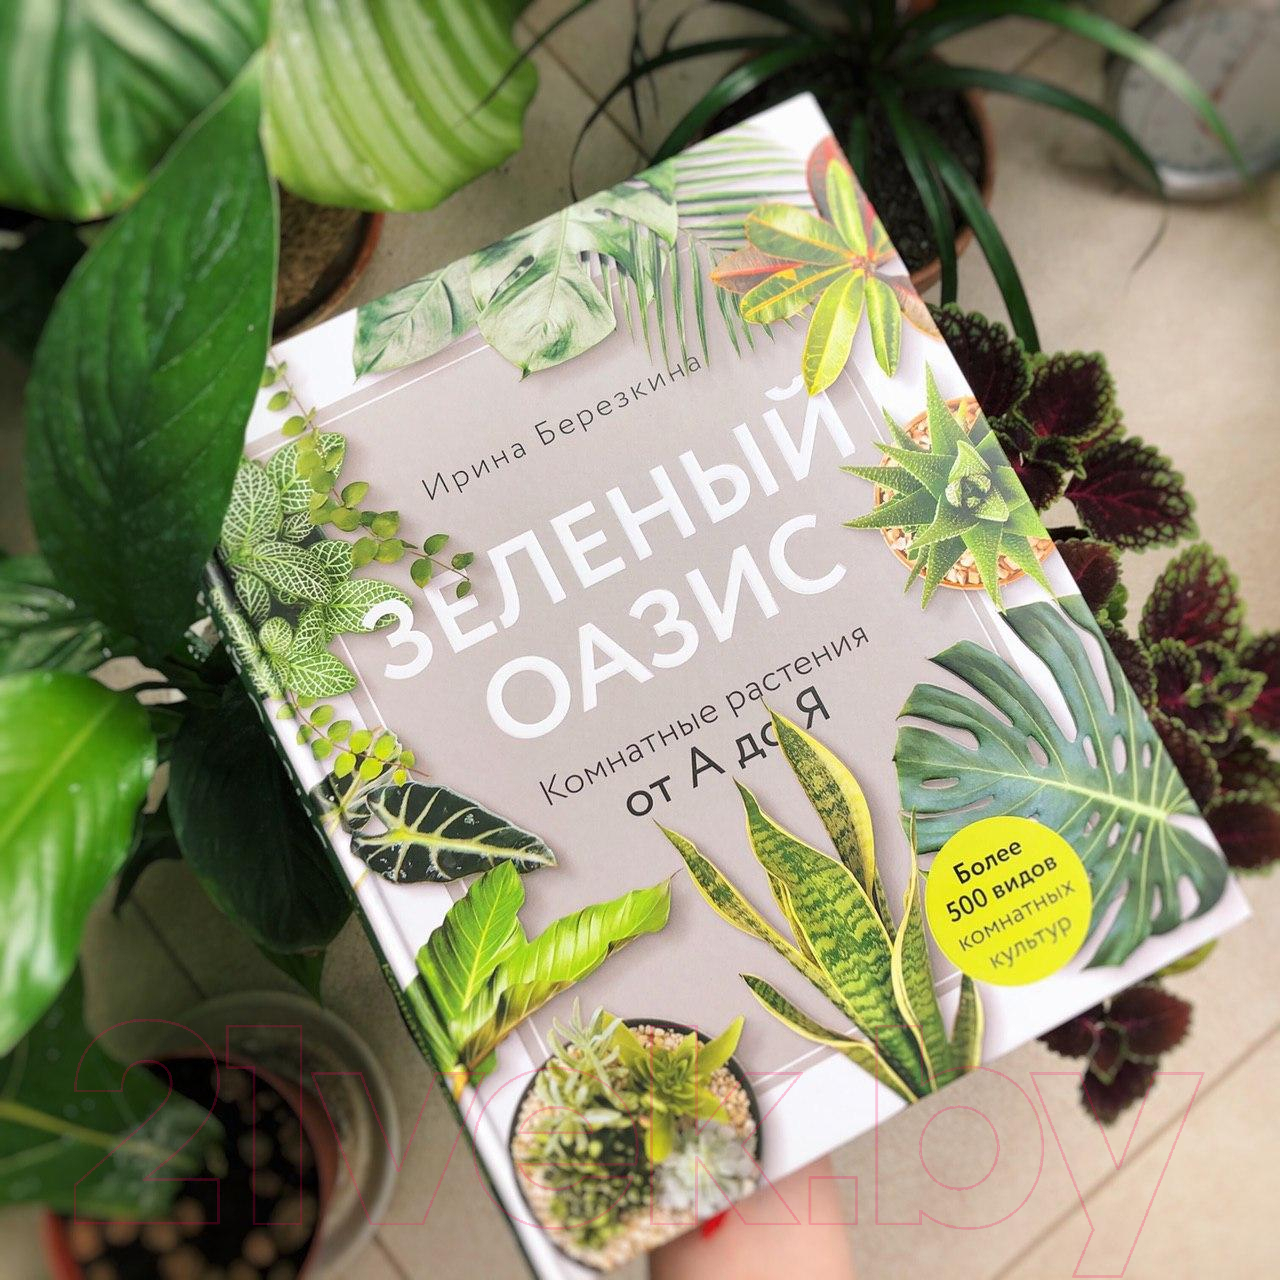 Энциклопедия Эксмо Зеленый оазис. Комнатные растения от А до Я